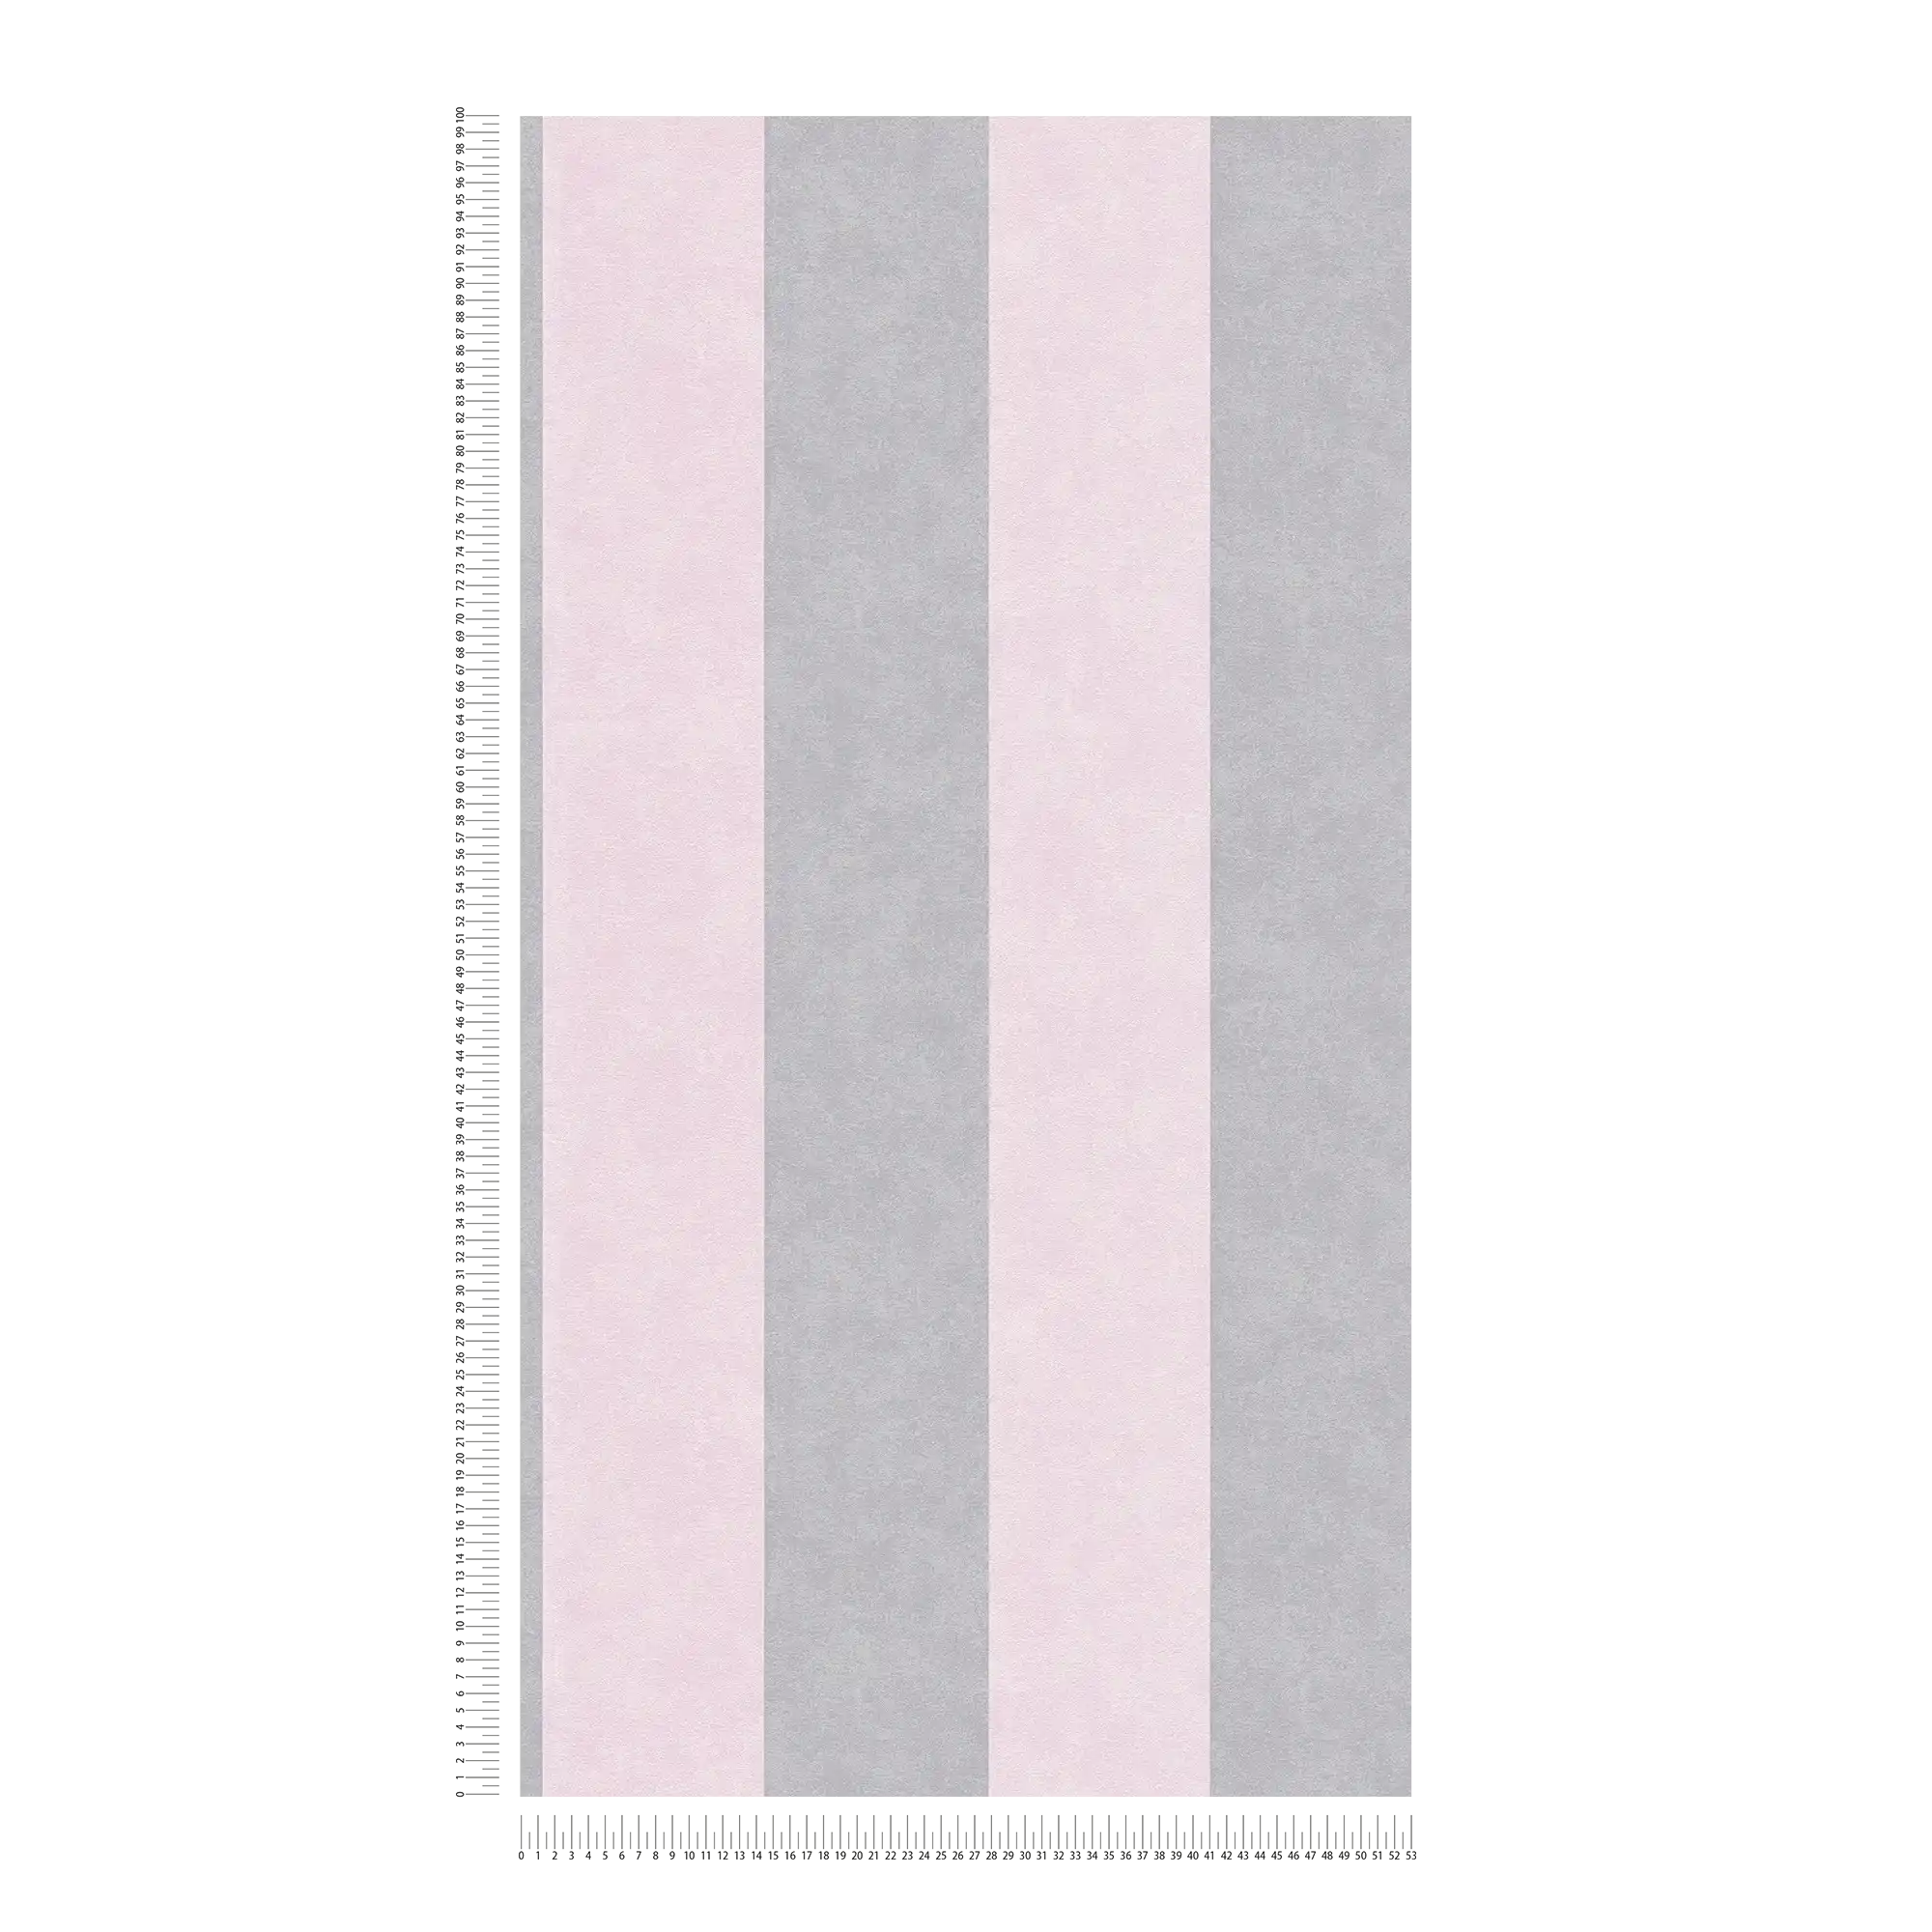             Carta da parati a righe con motivo texture - grigio, rosa
        